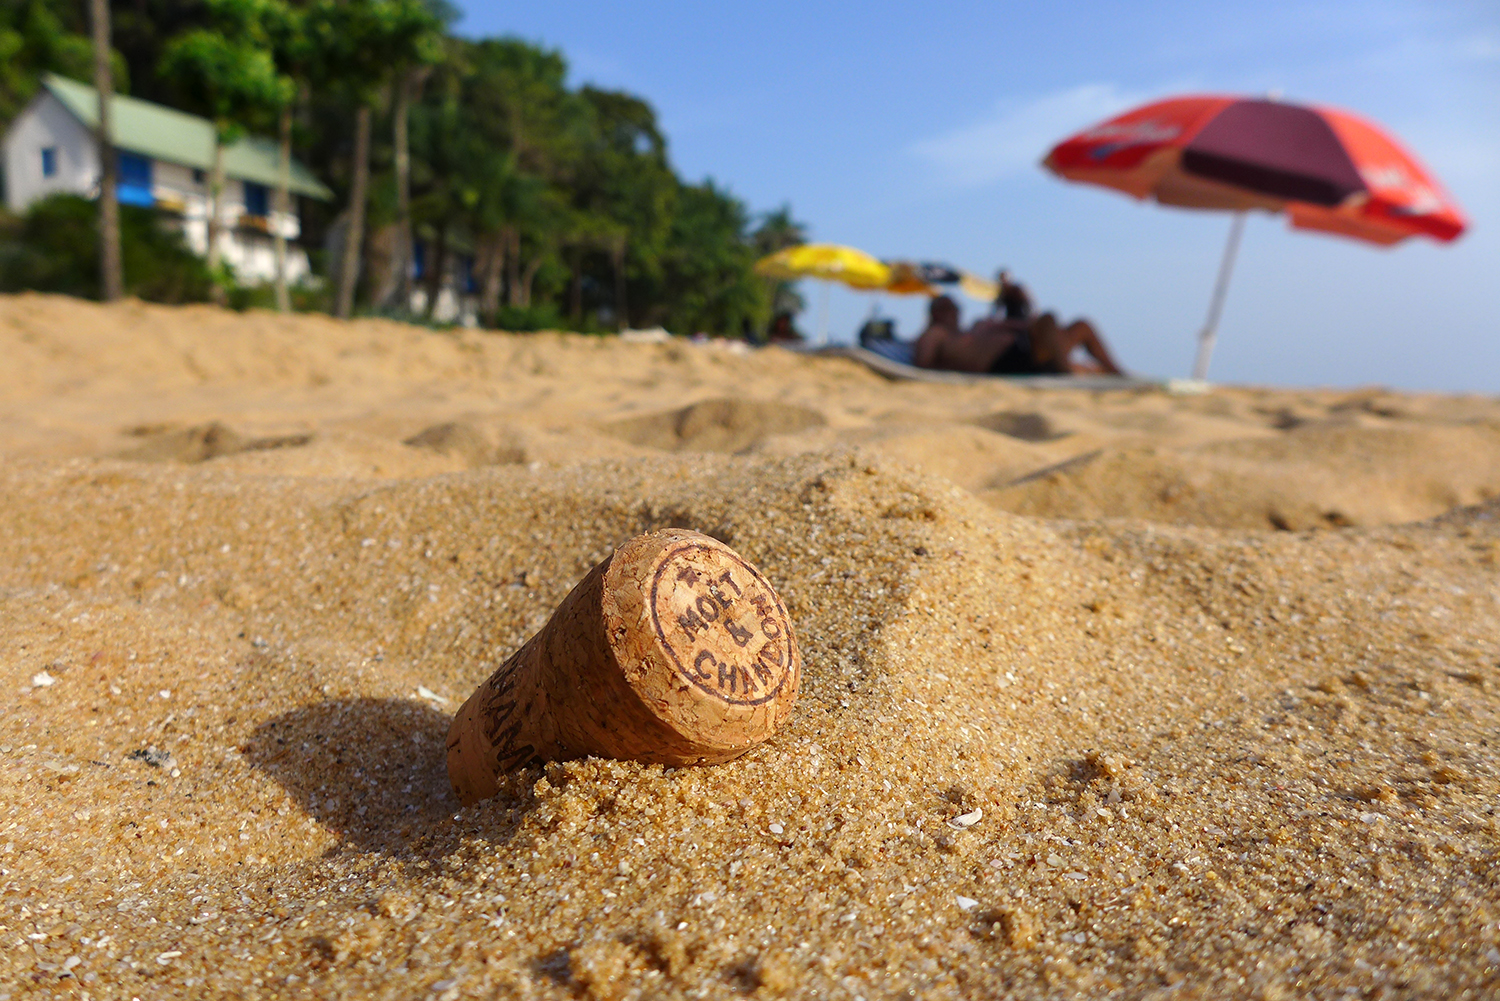 Ce bouchon de champagne sur la plage témoigne que les visiteurs de l’île sont fortunés.